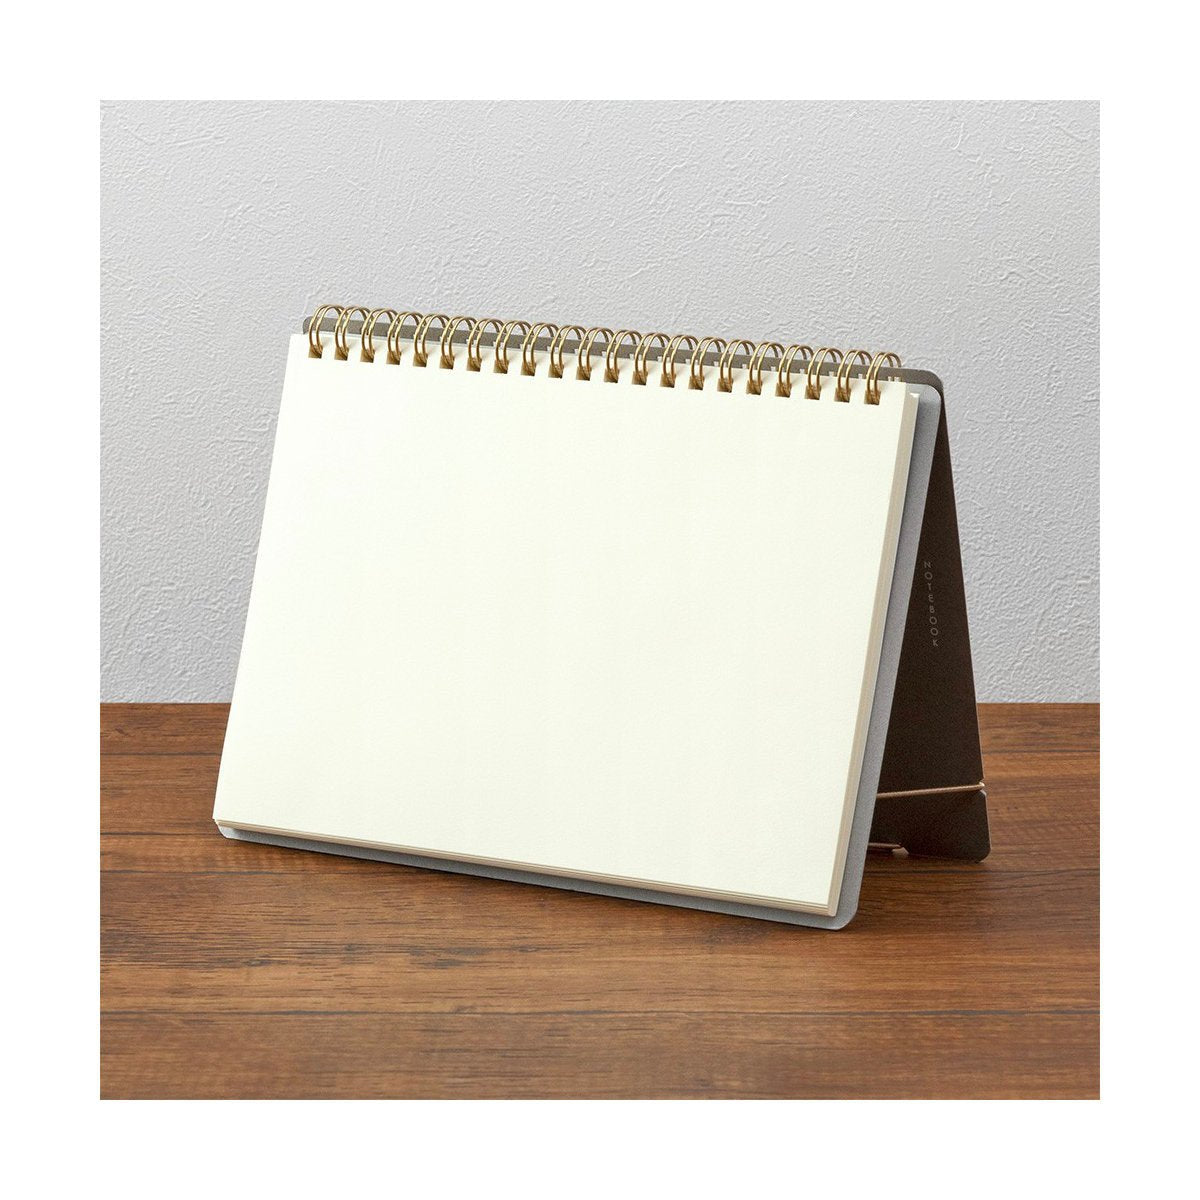 Midori Stand - A5 Notebook - Blank - Notegeist